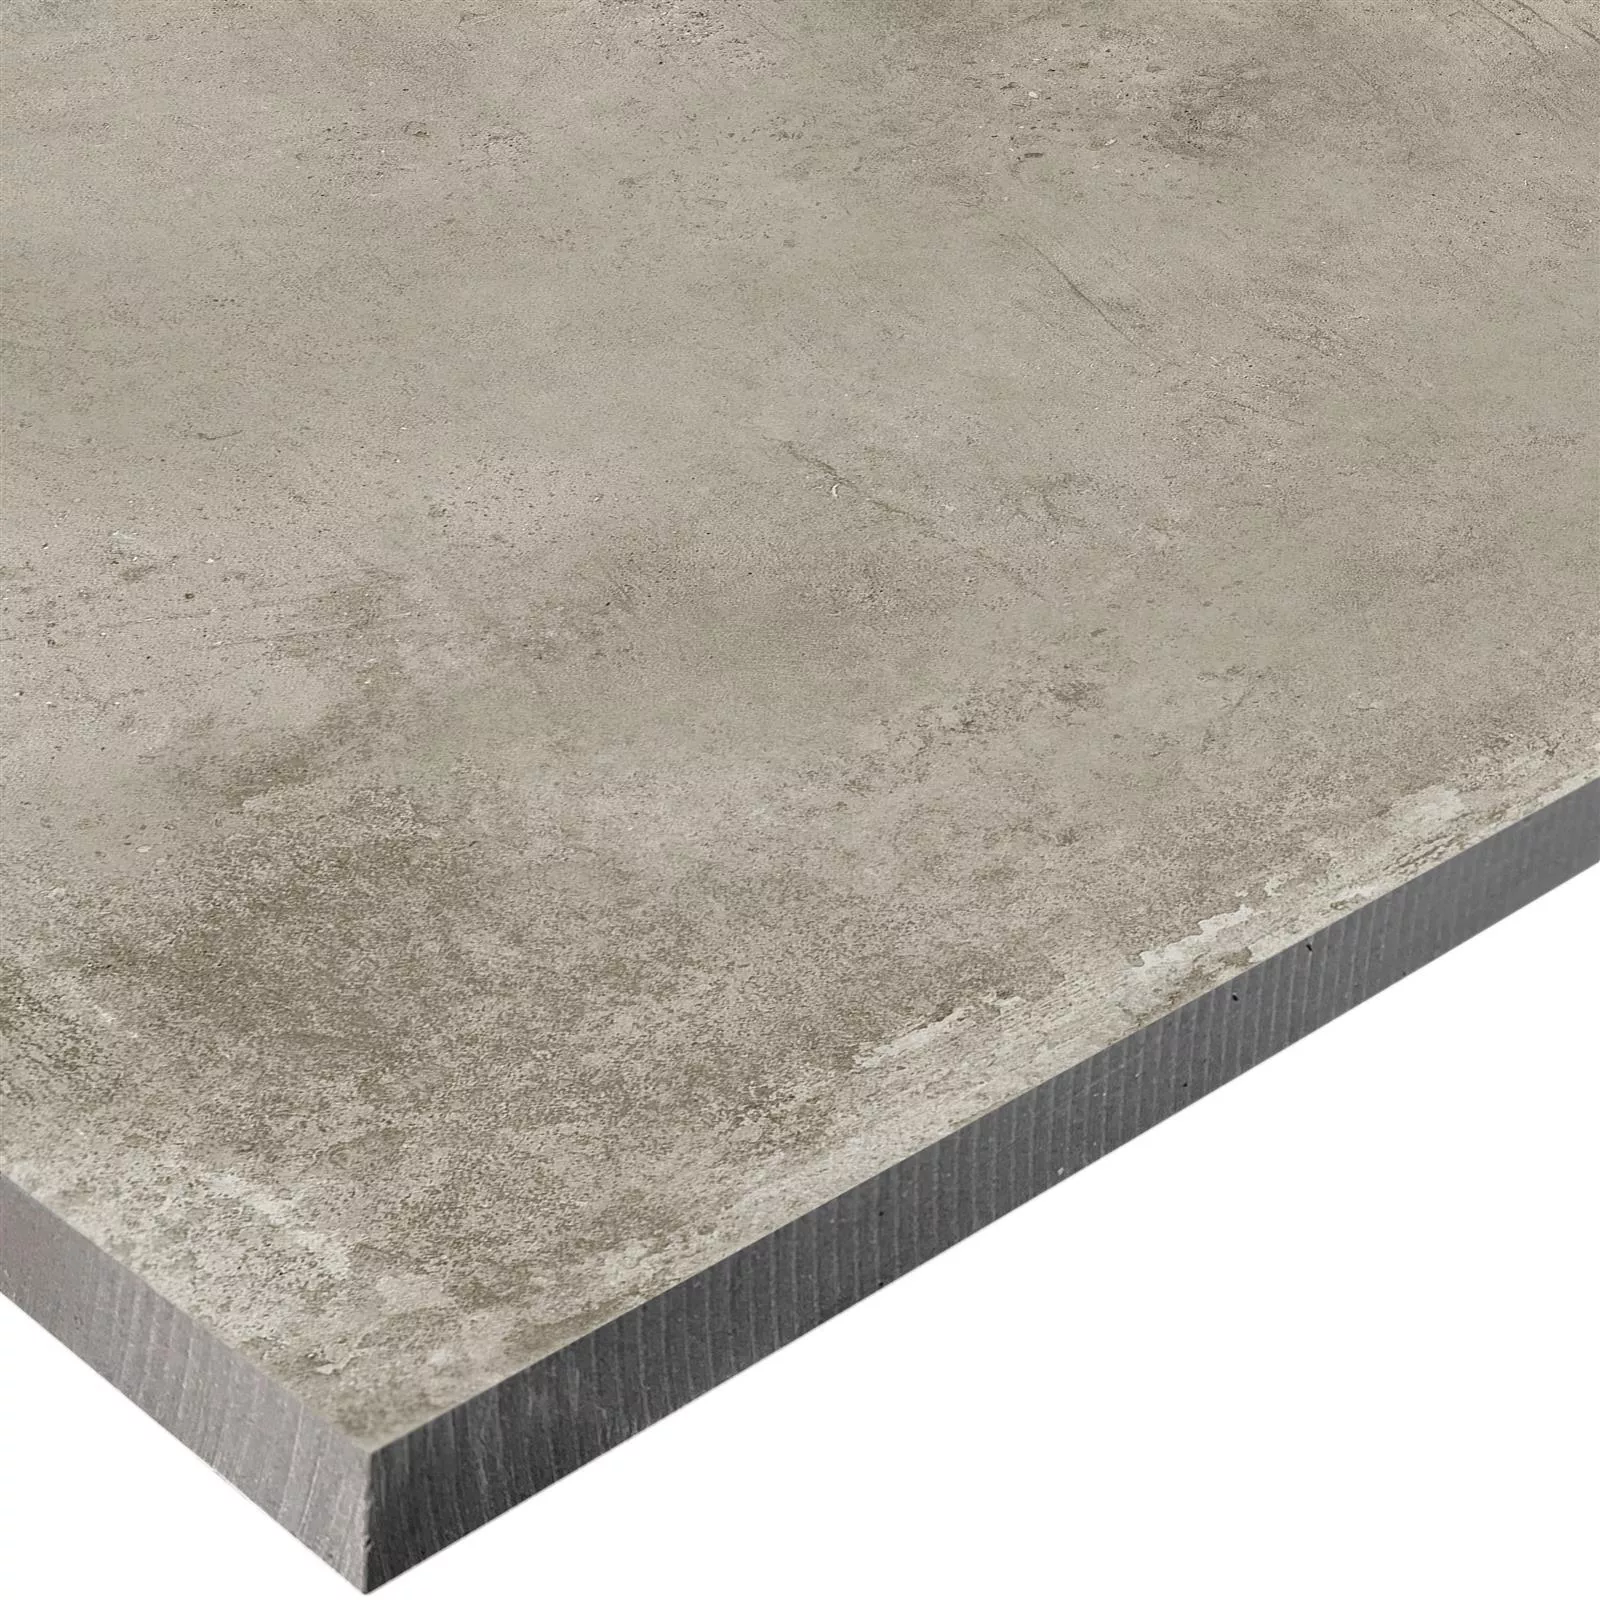 Plăci De Terasă Aspect de Ciment Berlin Bej 60x120cm